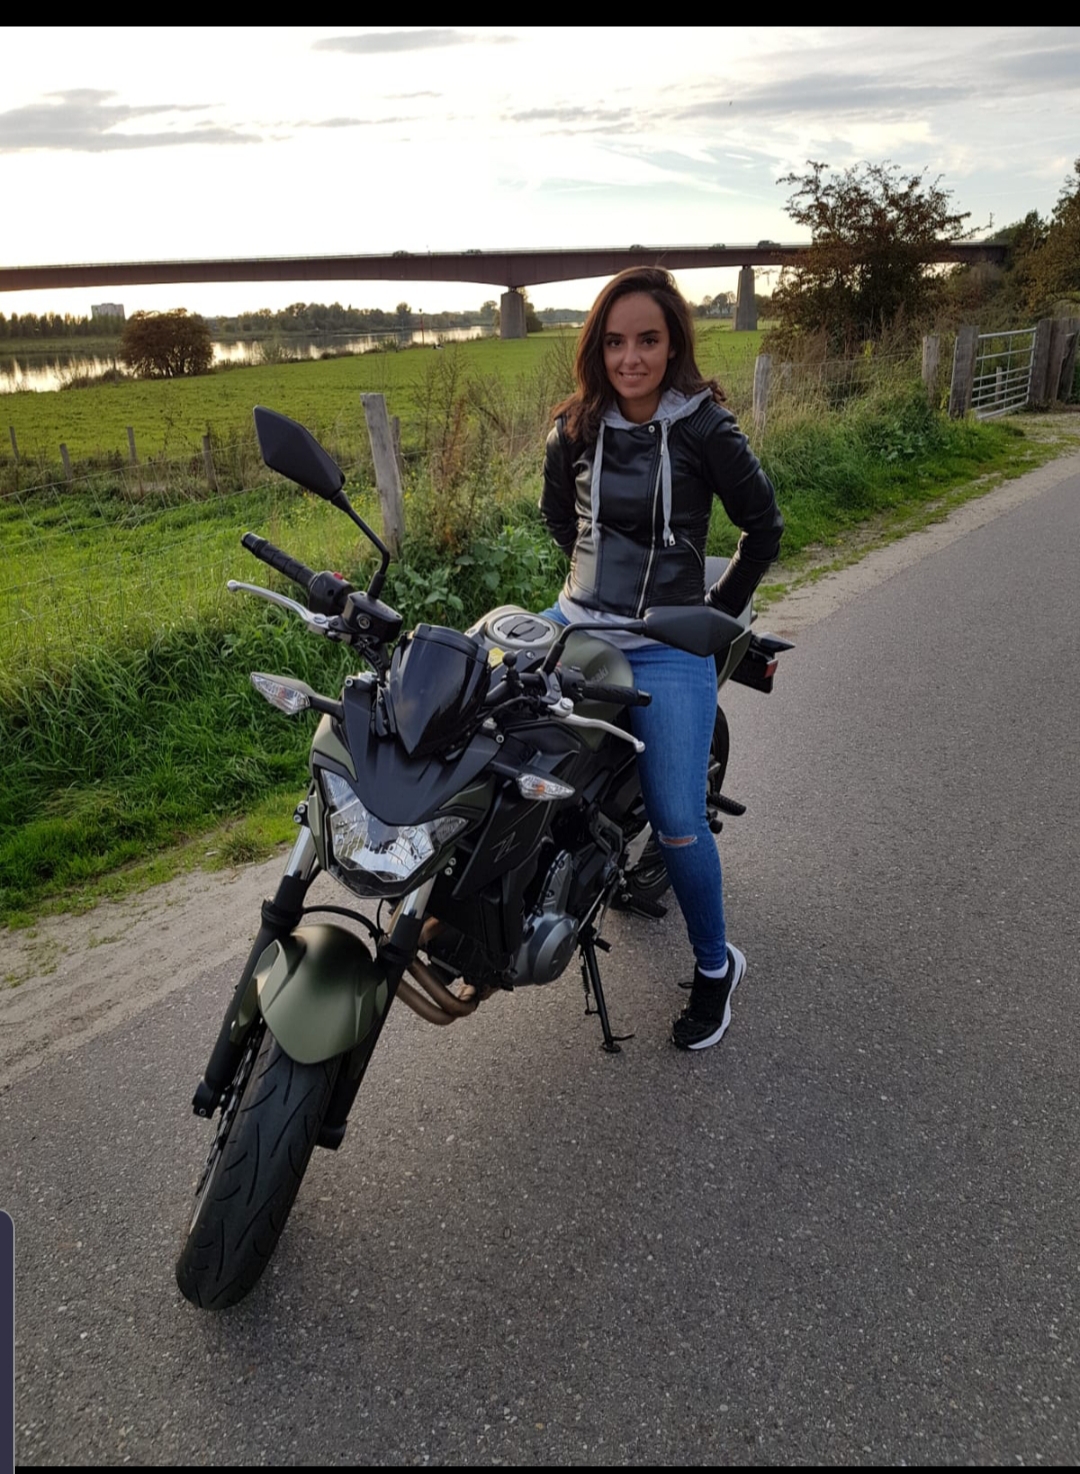 Onwijs Dikra: 'De Marokkaanse vrouw die motorrijdt is wel zeldzaam KU-68